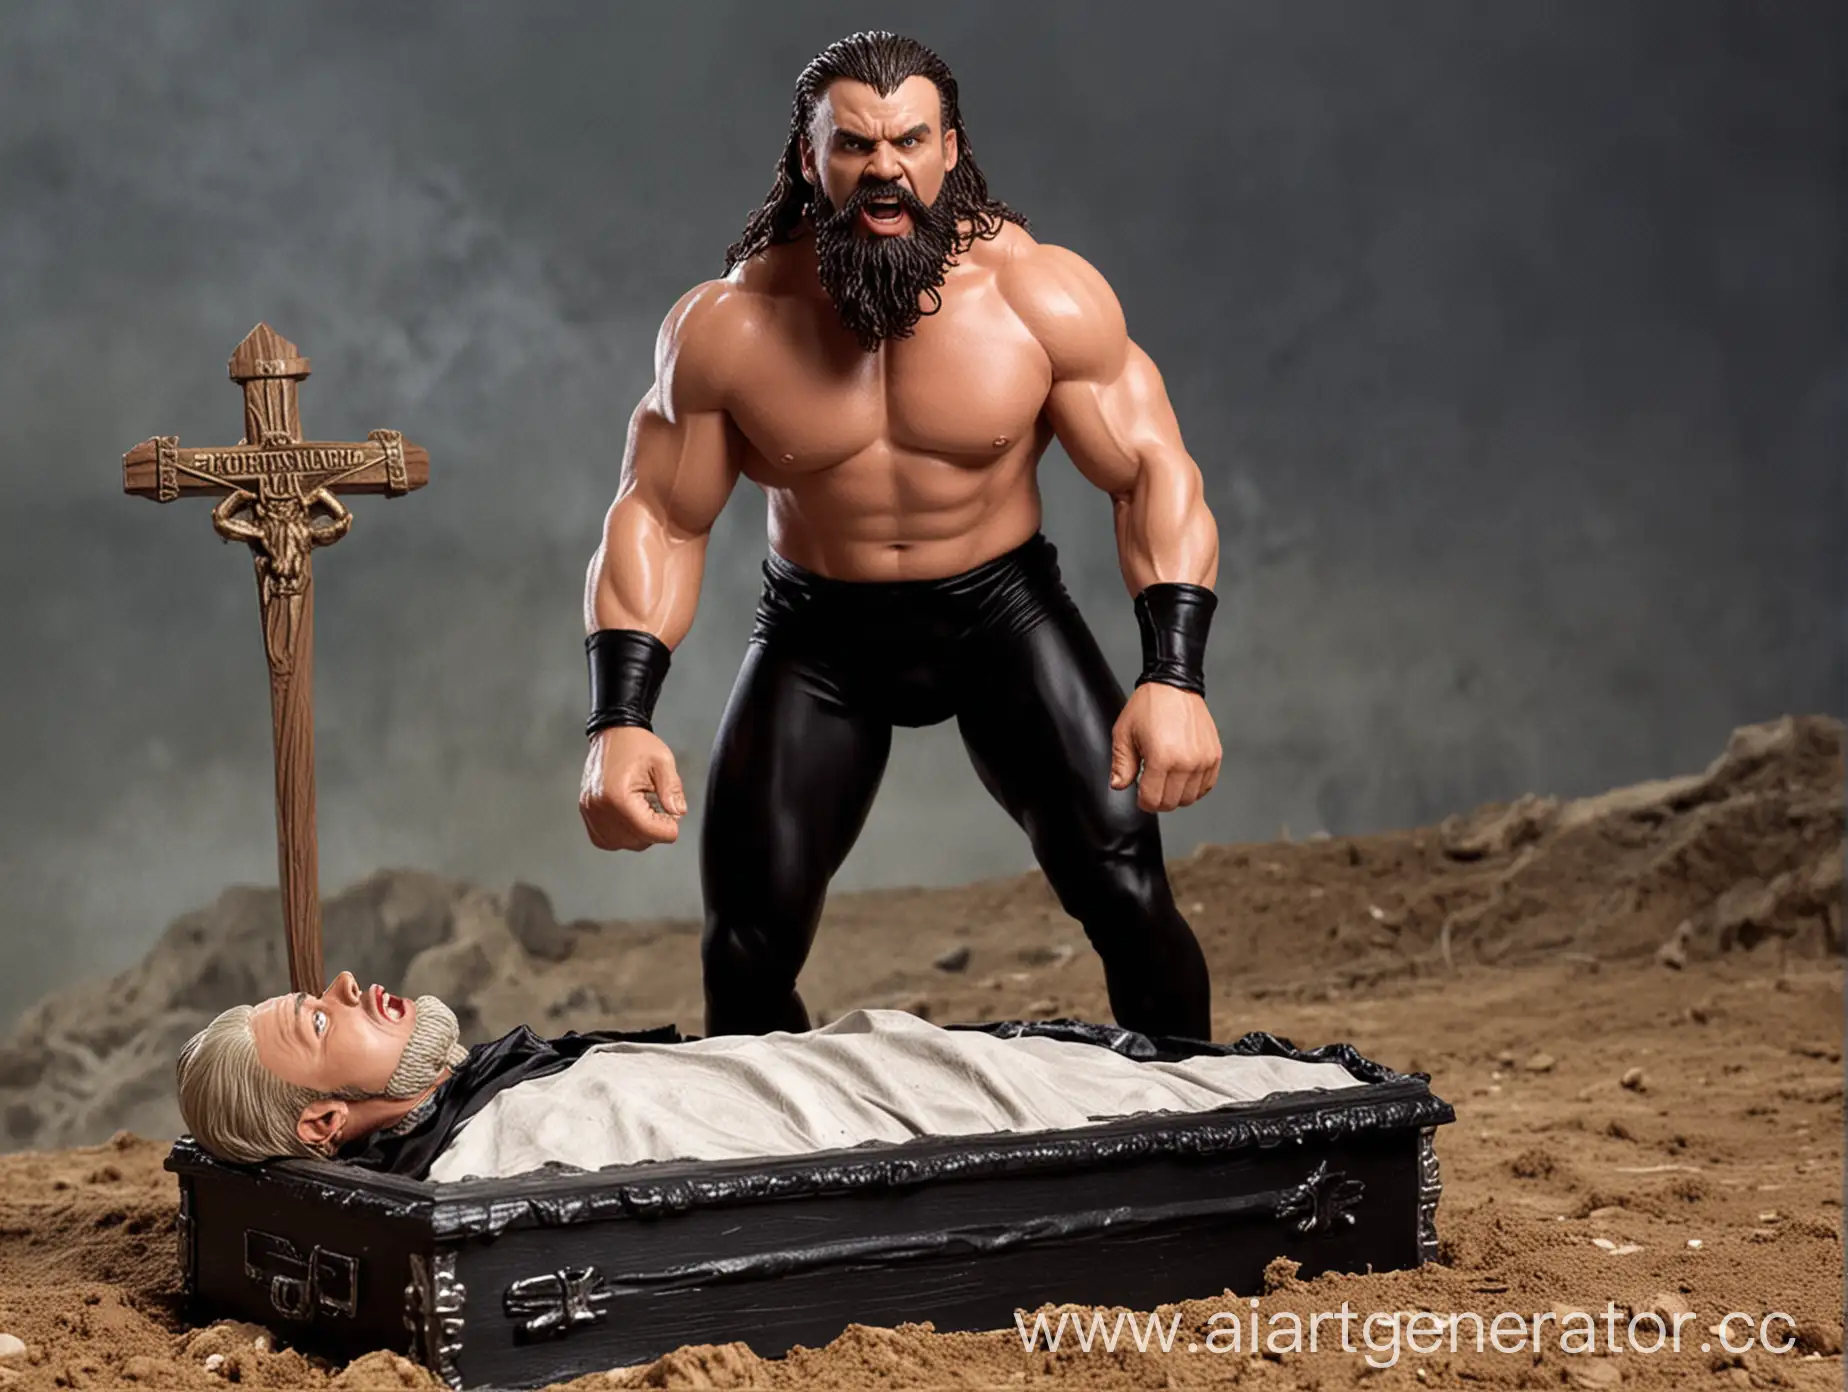 Гробовщик из WWE образца 1998 года удивляется с разинутым ртом от того, насколько большую могилу и гроб, в котором лежит огромный накачанный мужик с короткой бородой и в чёрно-белом трико, ему придётся хоронить.